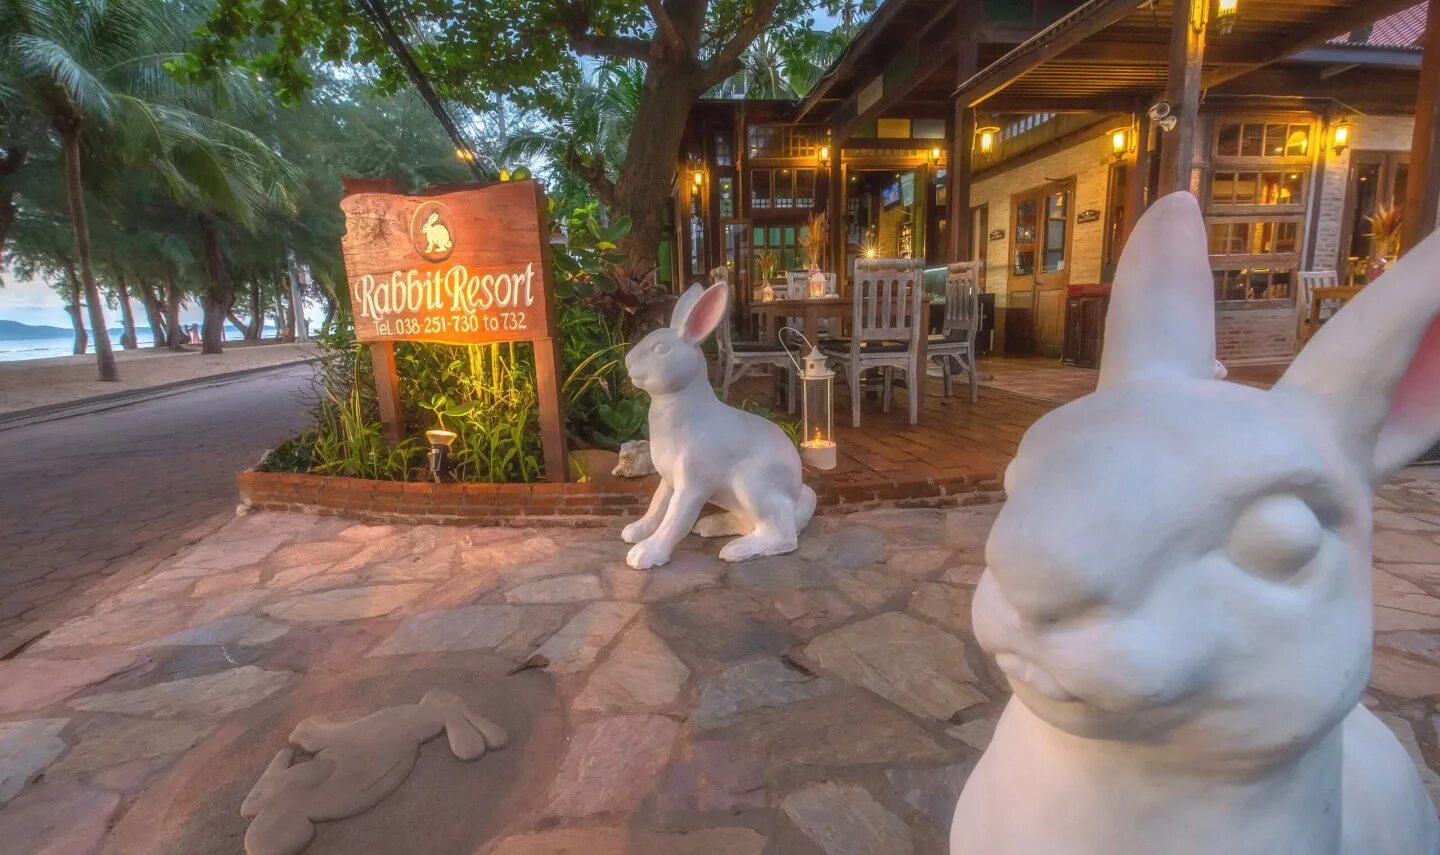 Раббит Ресорт Паттайя. Отель Rabbit Resort Pattaya. Таиланд Паттайя рэббит Резорт. Rabbit Resort 4*.